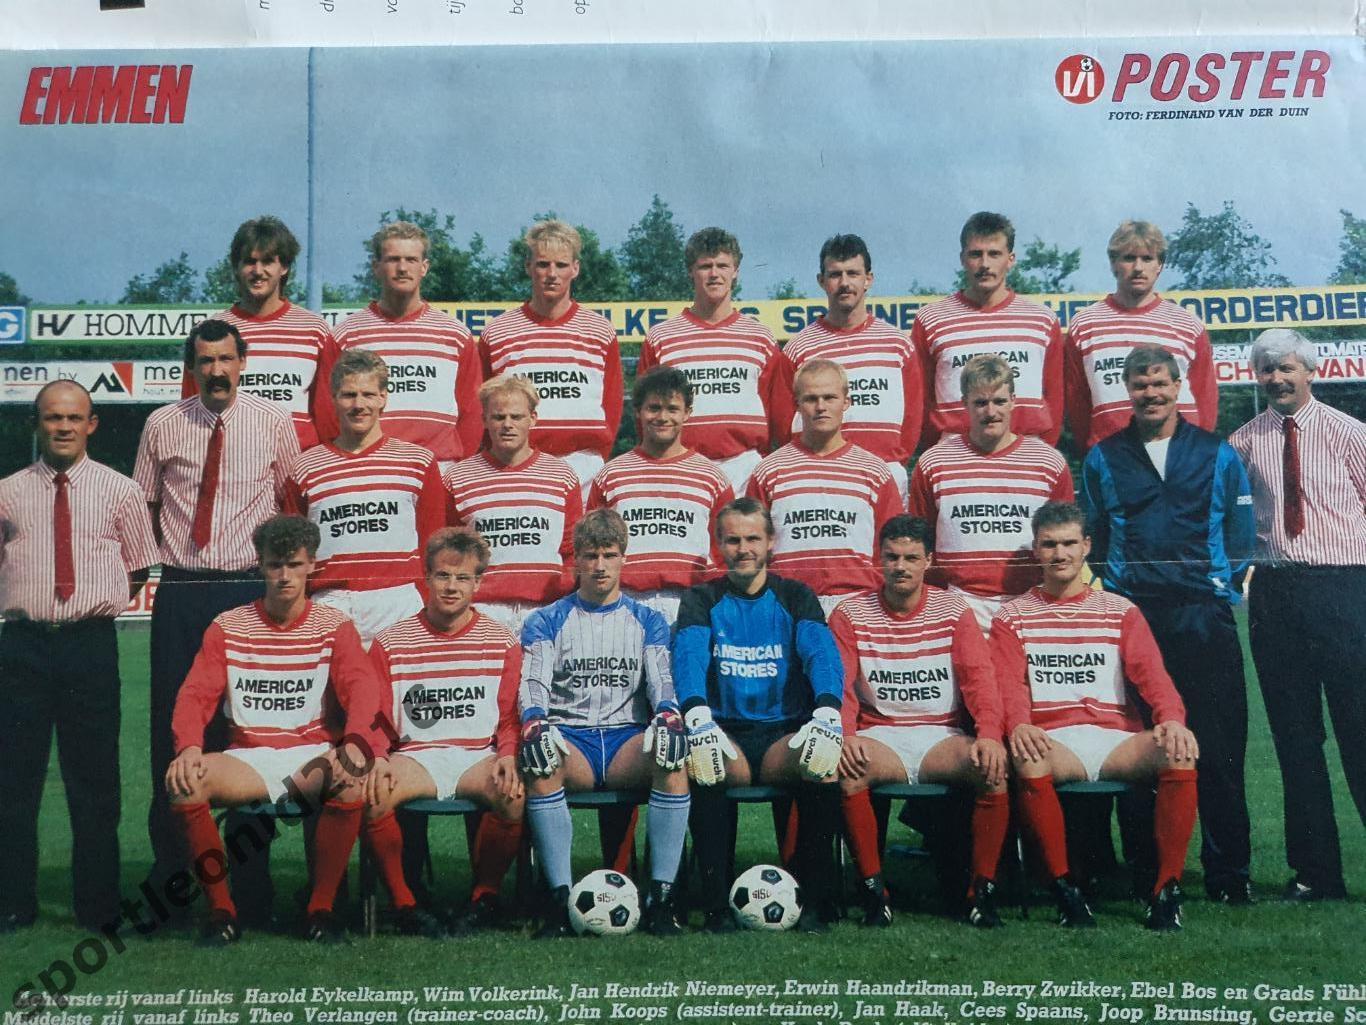 Voetbal International 1988.Годовая подписка.52 номера +4 спецвыпуска к Евро-88.1 2